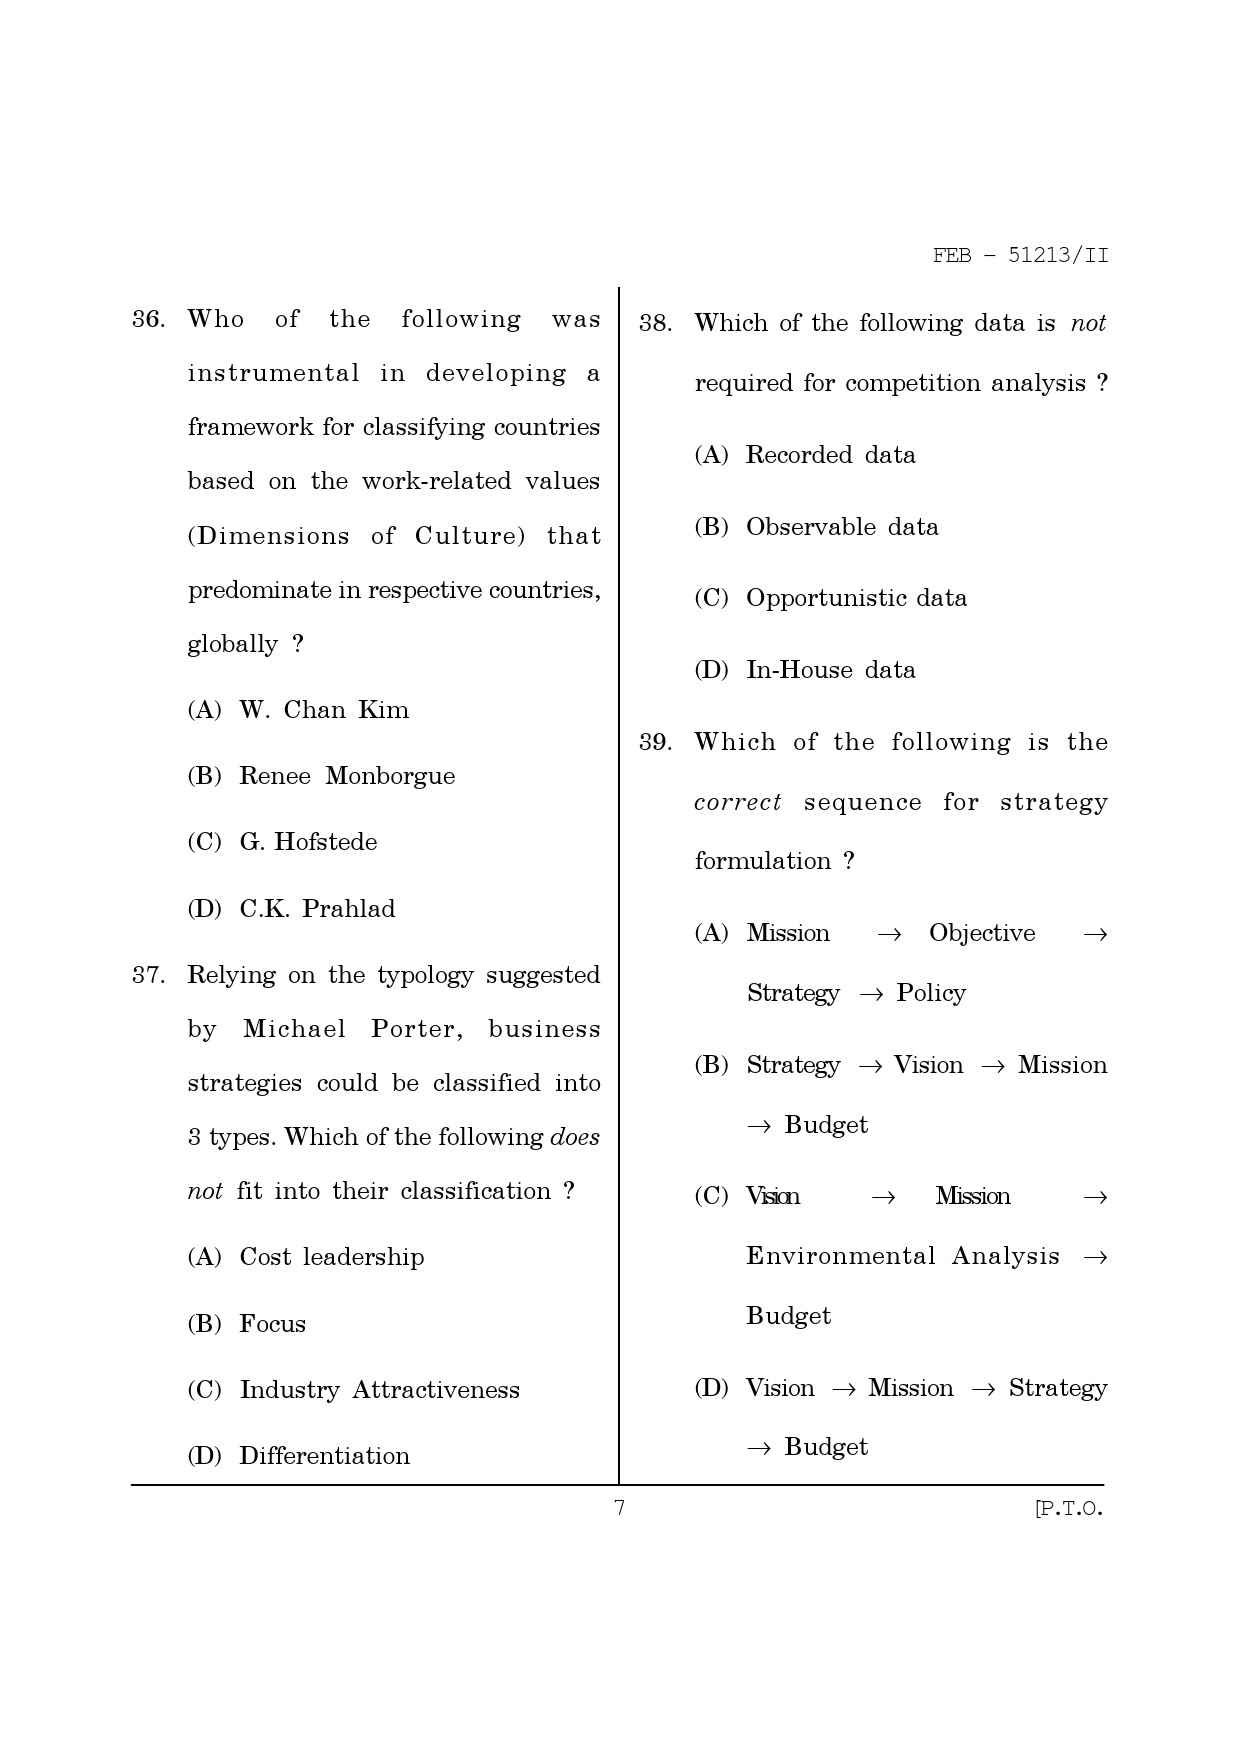 Maharashtra SET Management Question Paper II February 2013 7